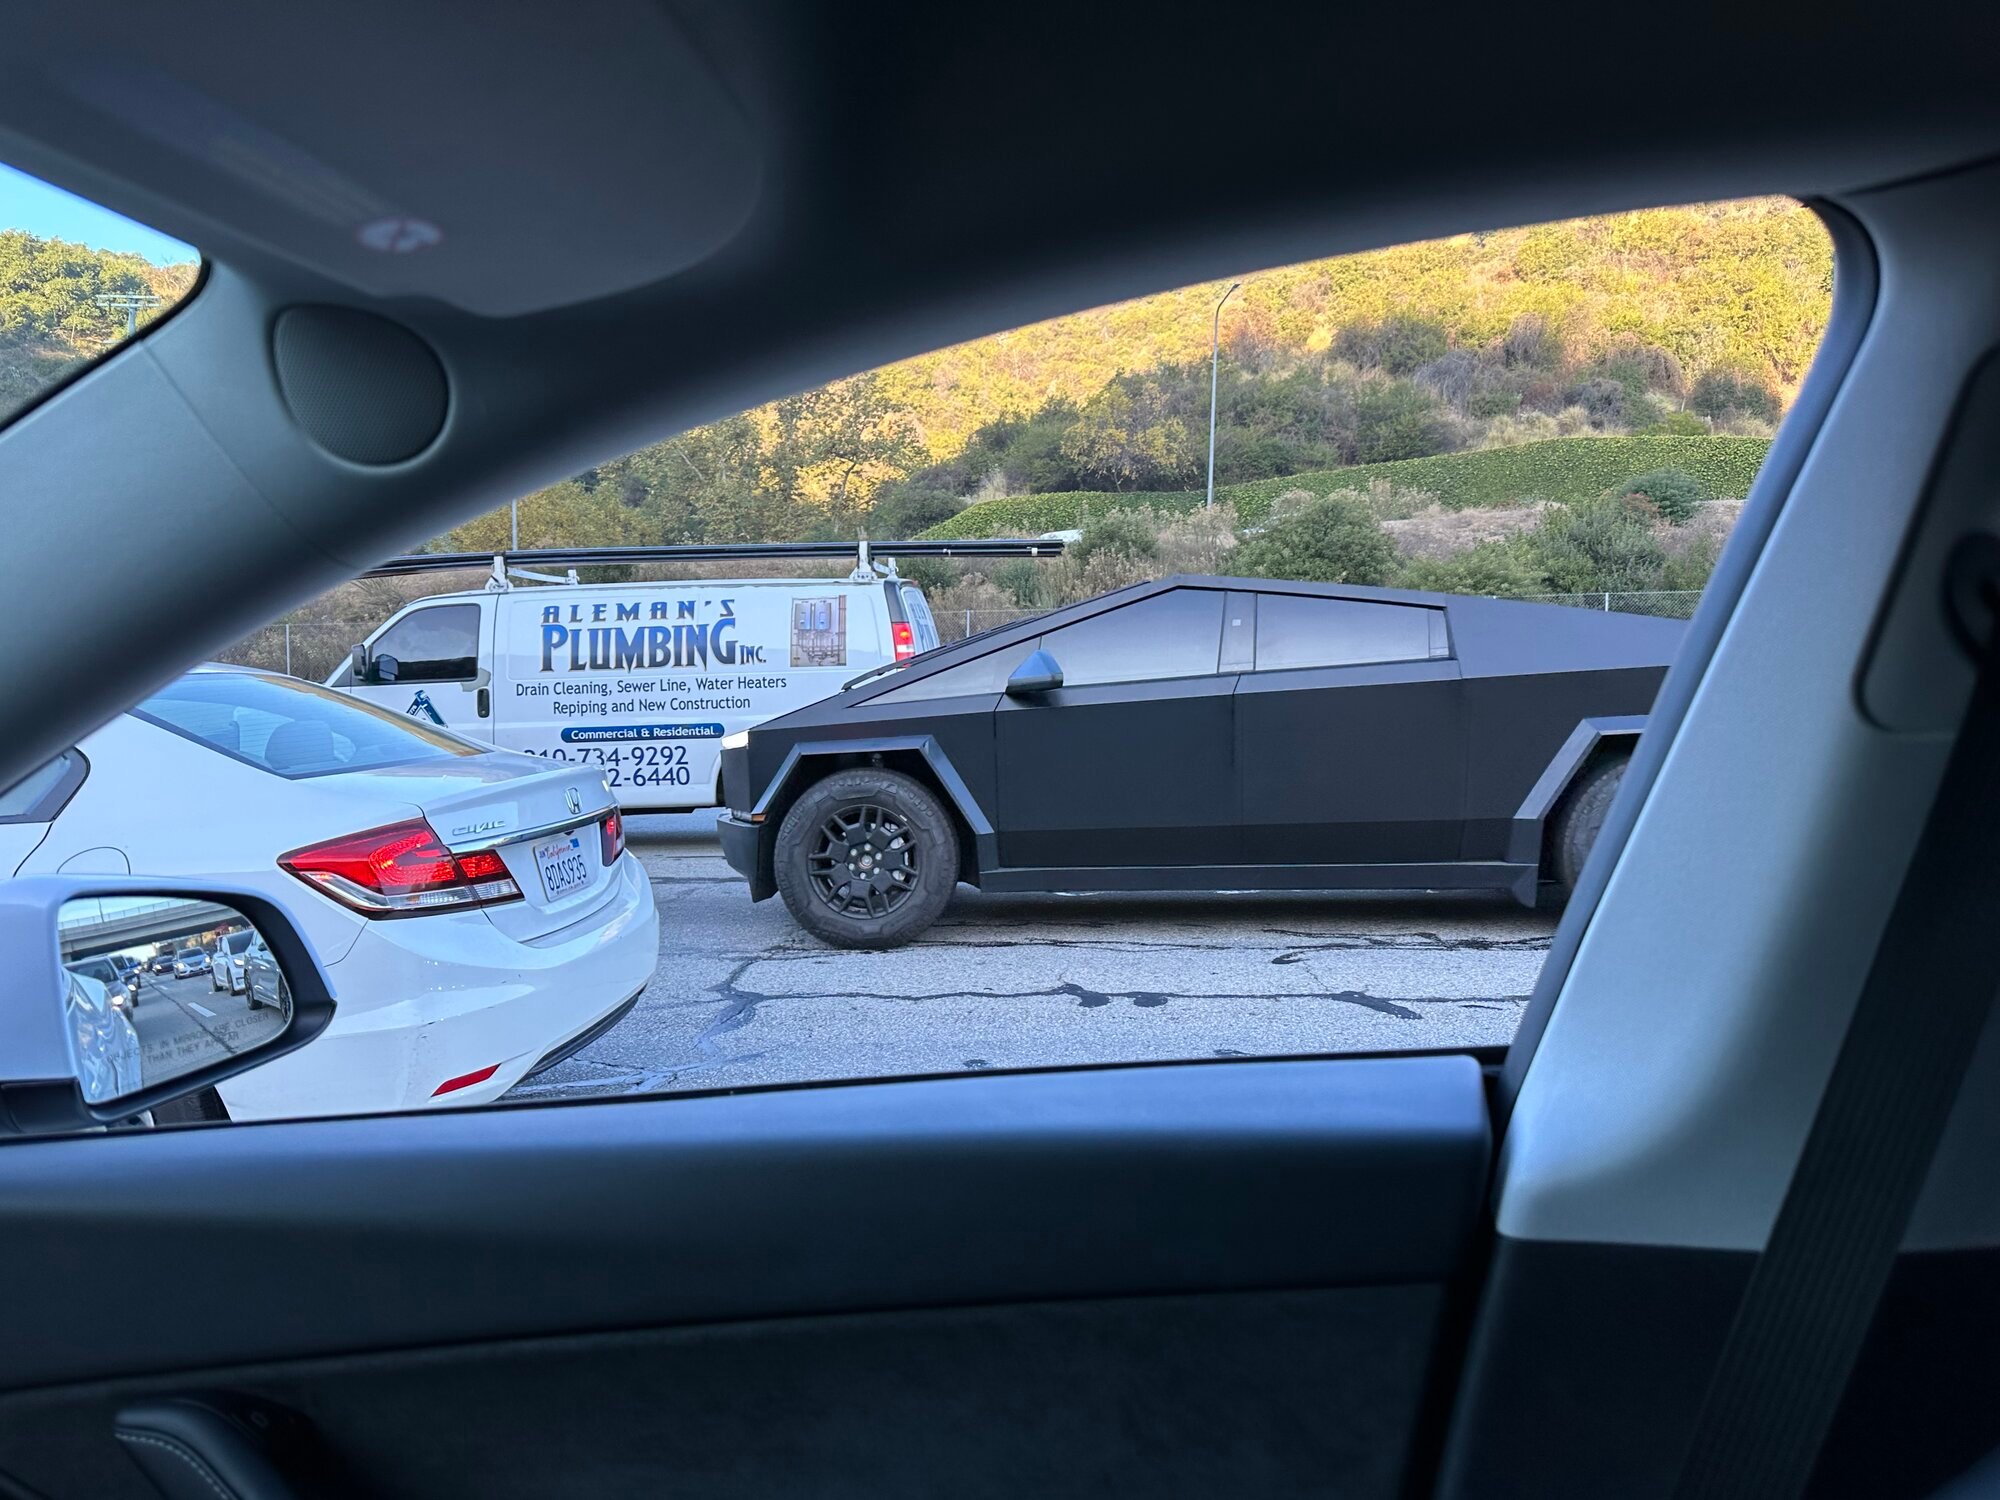 Cybertruck Spotted LA (405 Freeway) | Tesla Motors Club